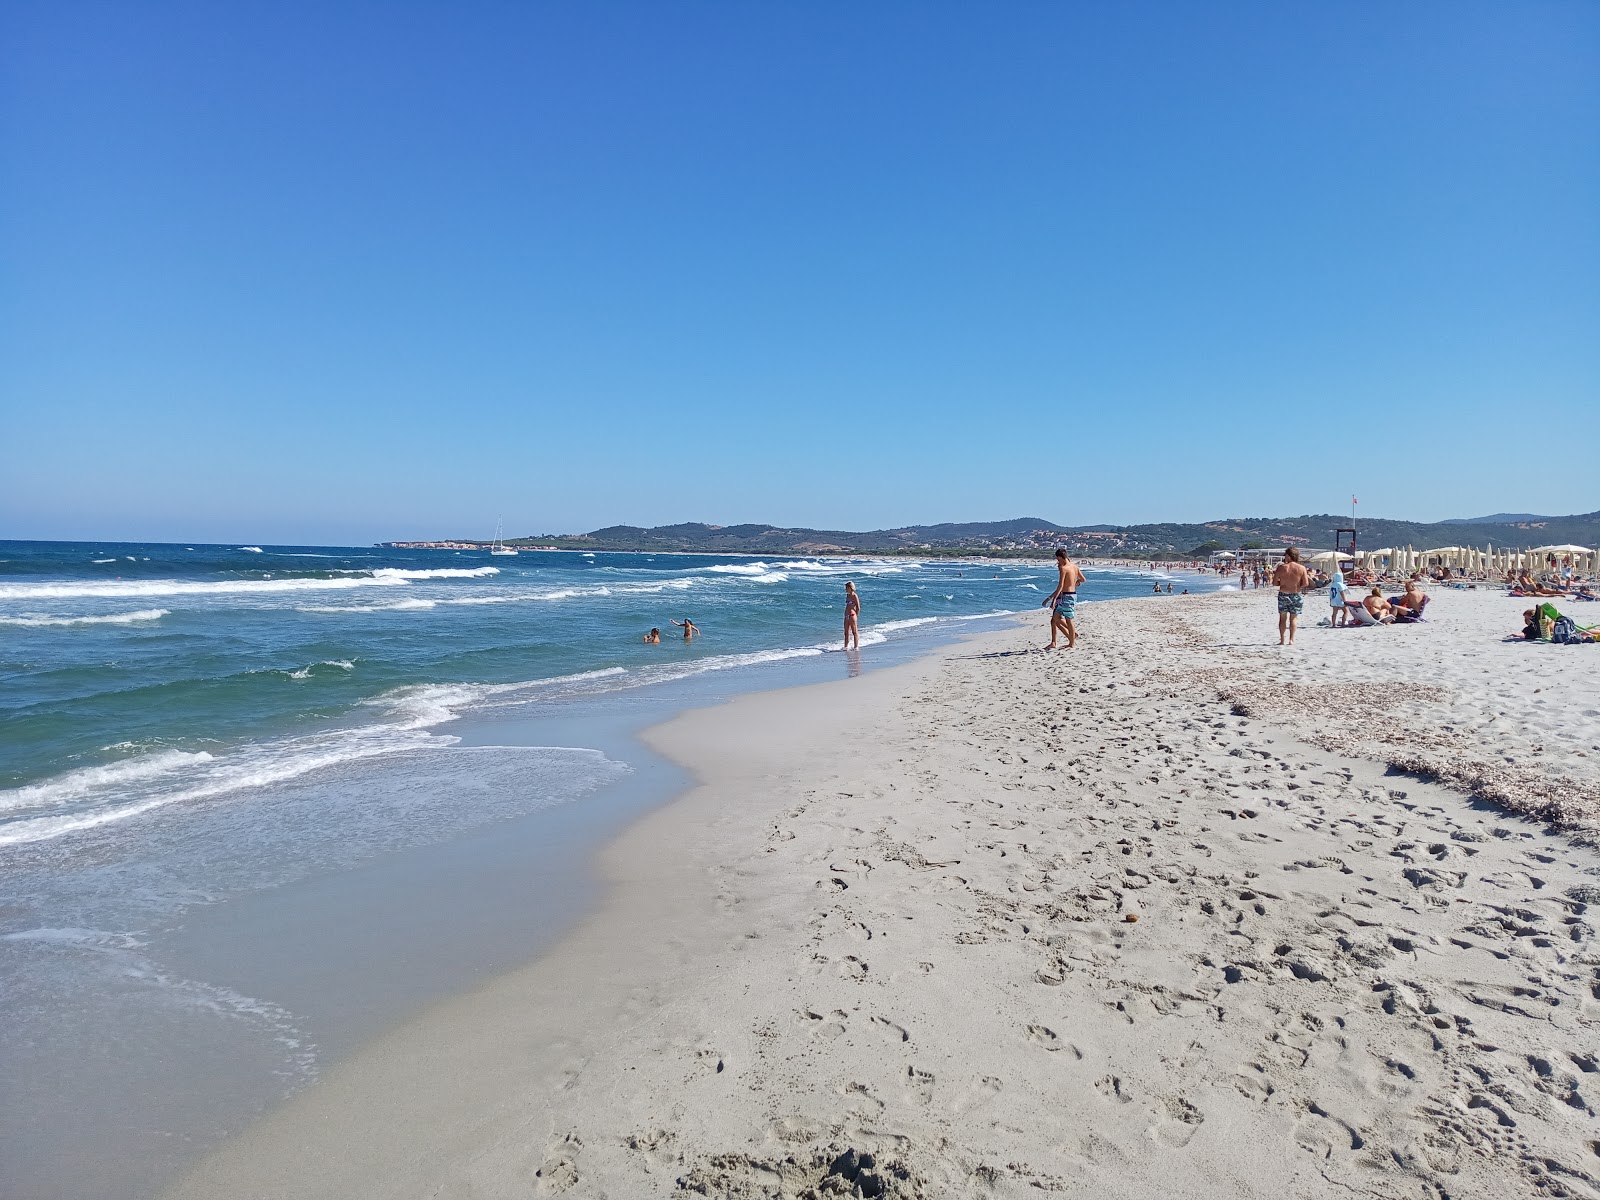 Capo Comino Plajı'in fotoğrafı parlak ince kum yüzey ile